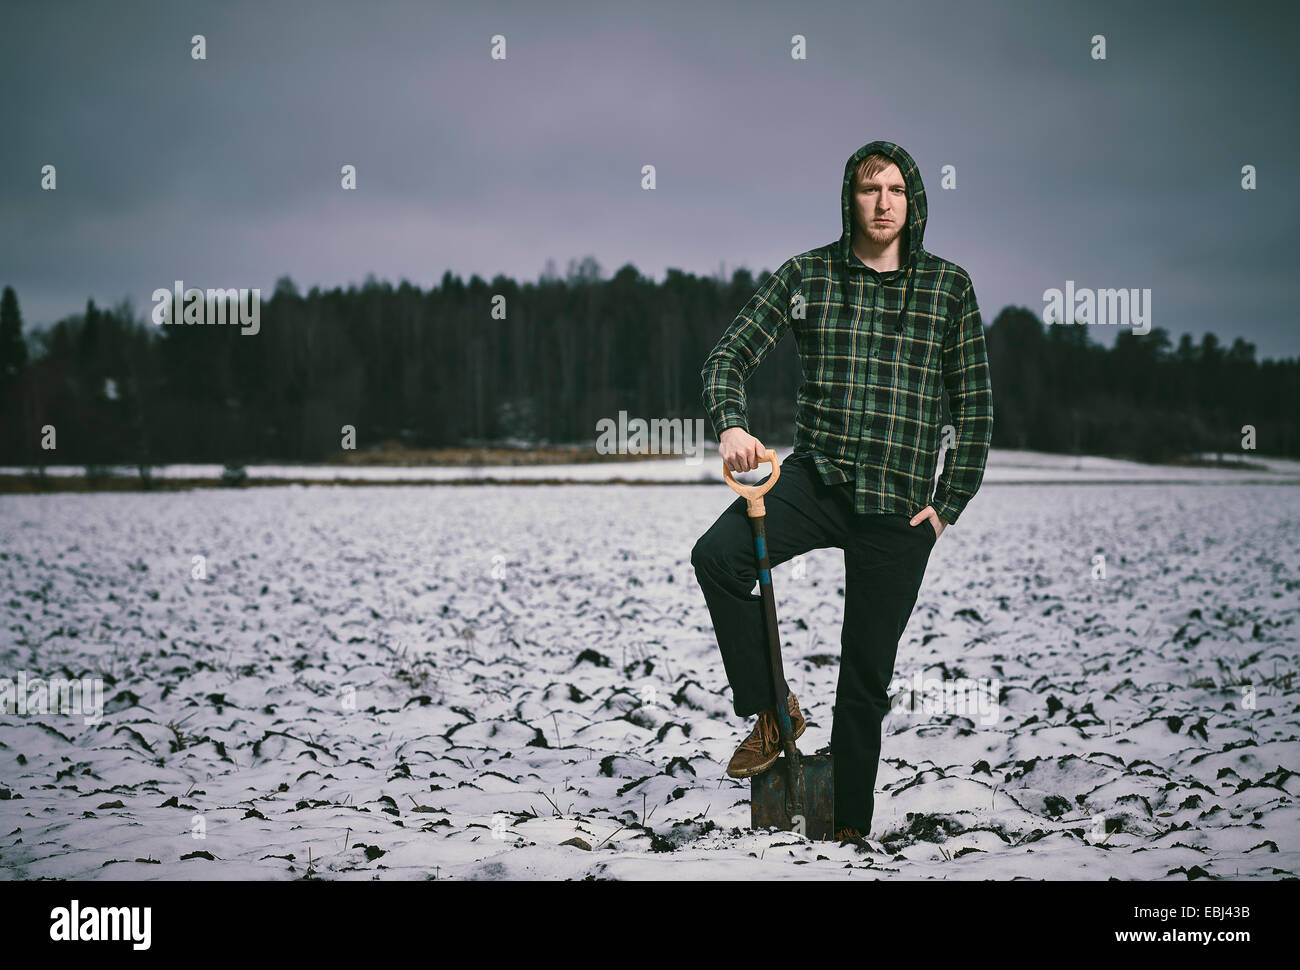 Hübscher junger Mann und Schaufel, verschneiten gepflügtes Feld auf Hintergrund - Kreuz bearbeitetes Bild Stockfoto